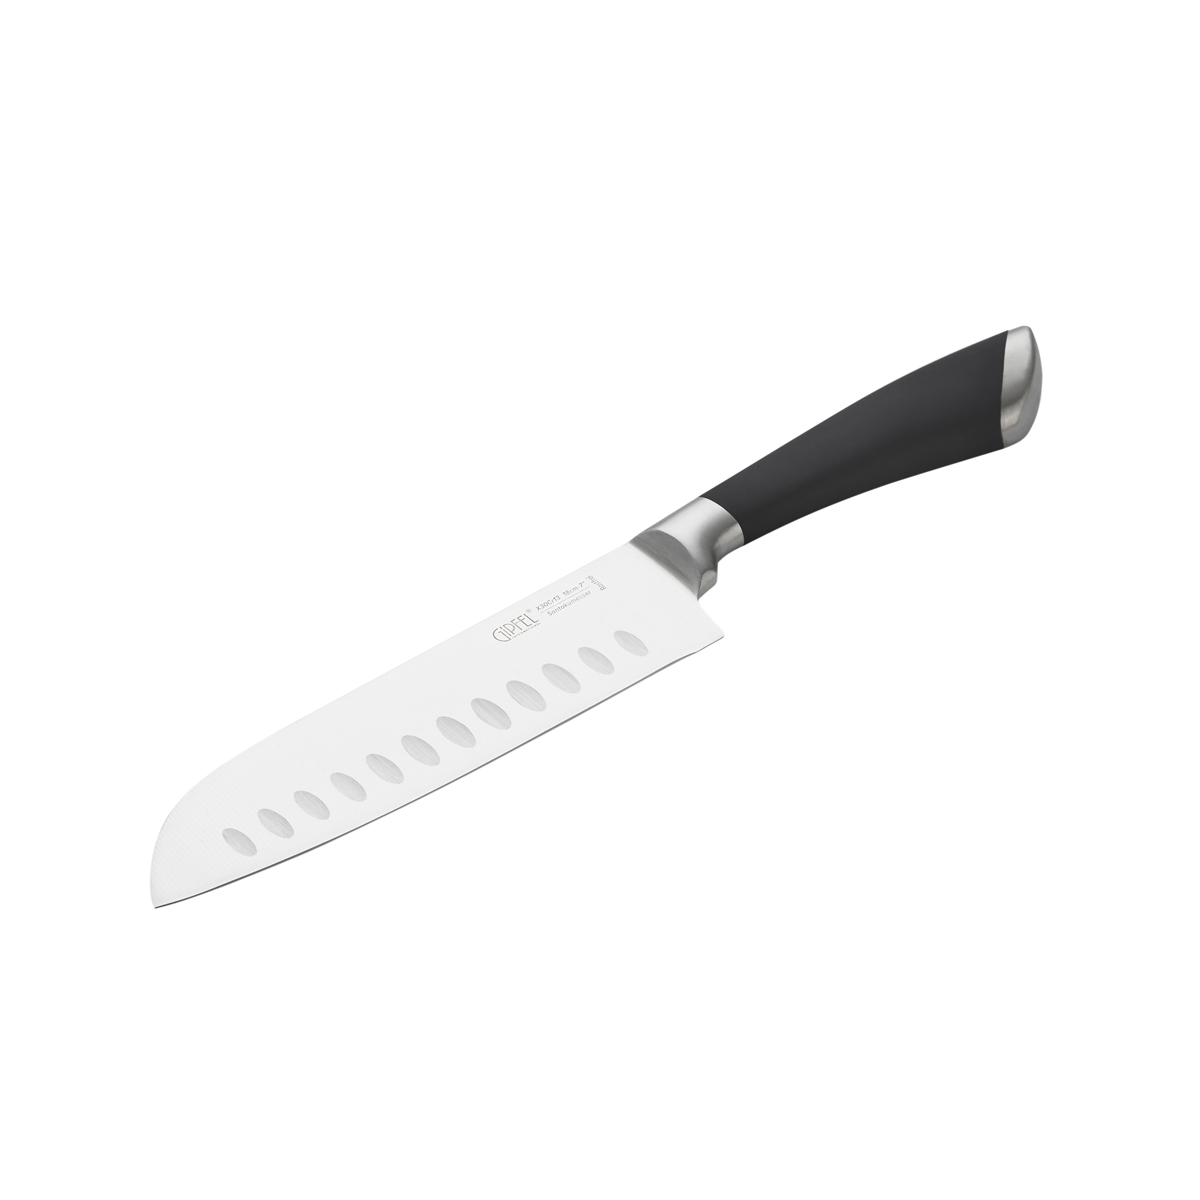 нож поварской сантоку gipfel mirella 6838 18 см Нож поварской сантоку Gipfel Mirella 6838 18 см